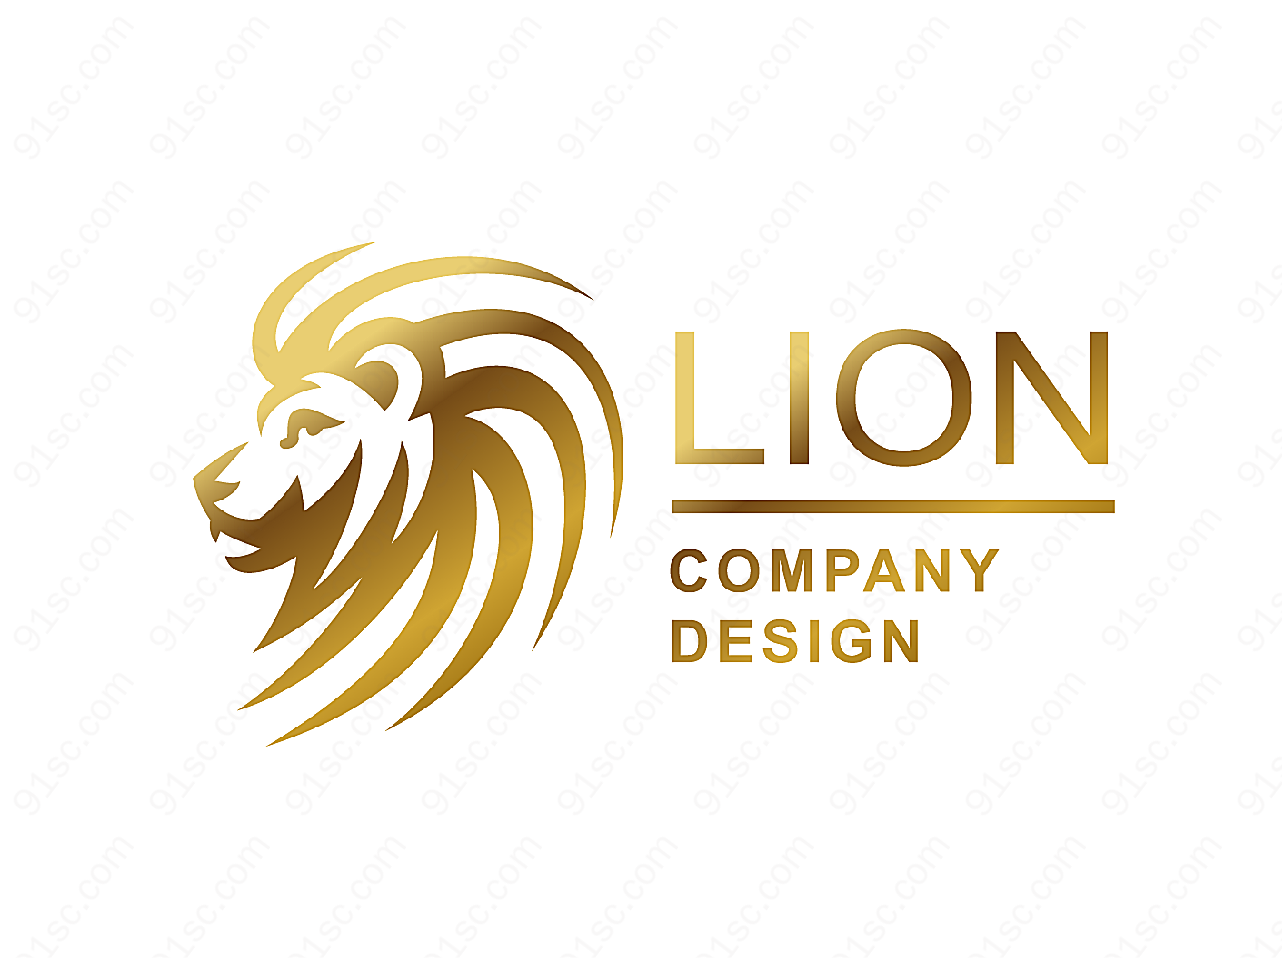 狮子主题标志矢量logo图形